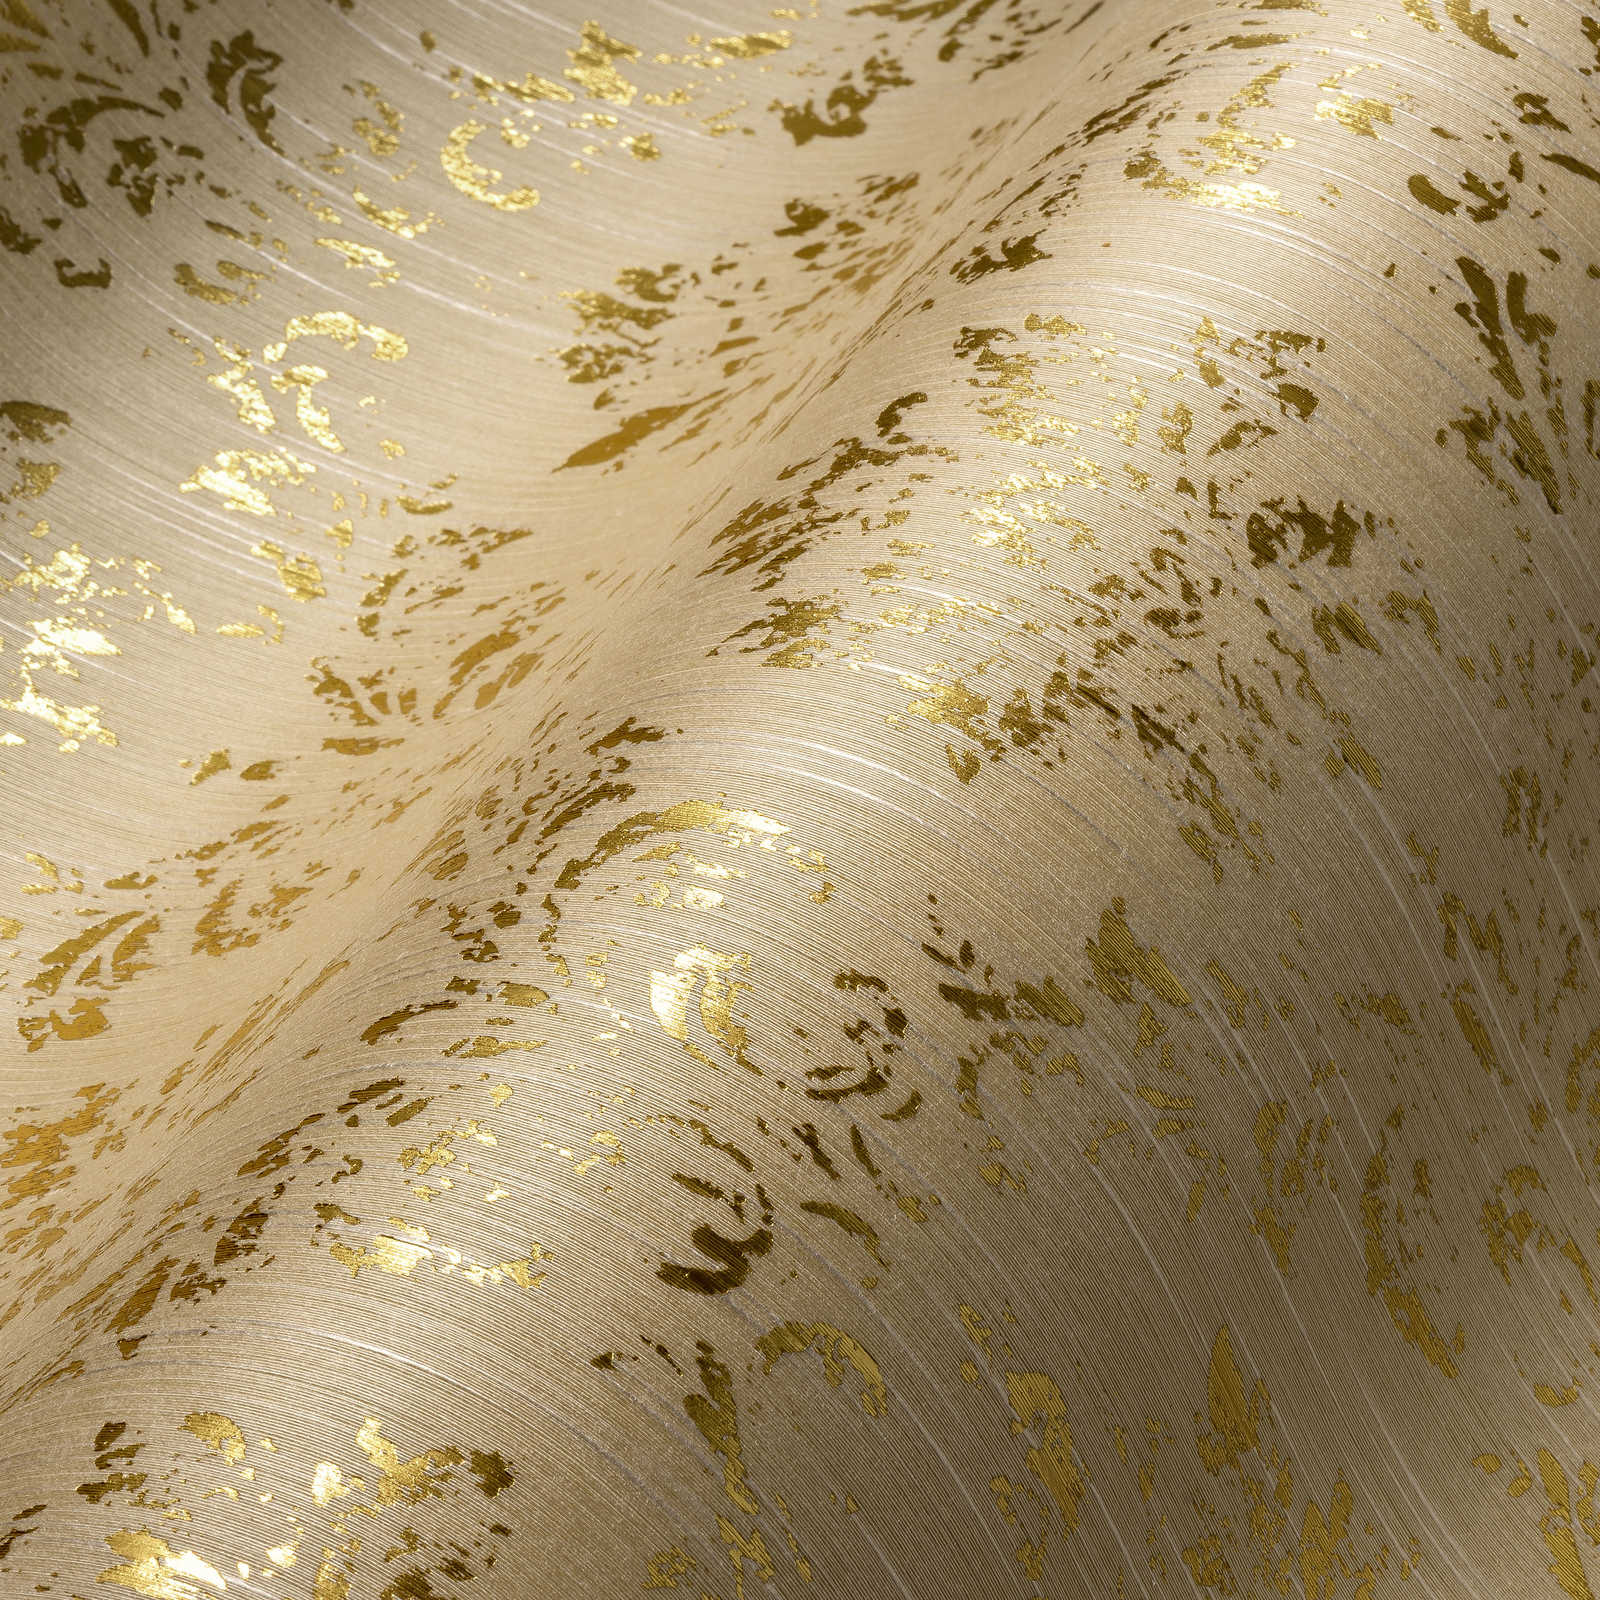             Papel pintado con adornos dorados en look usado - crema, oro
        